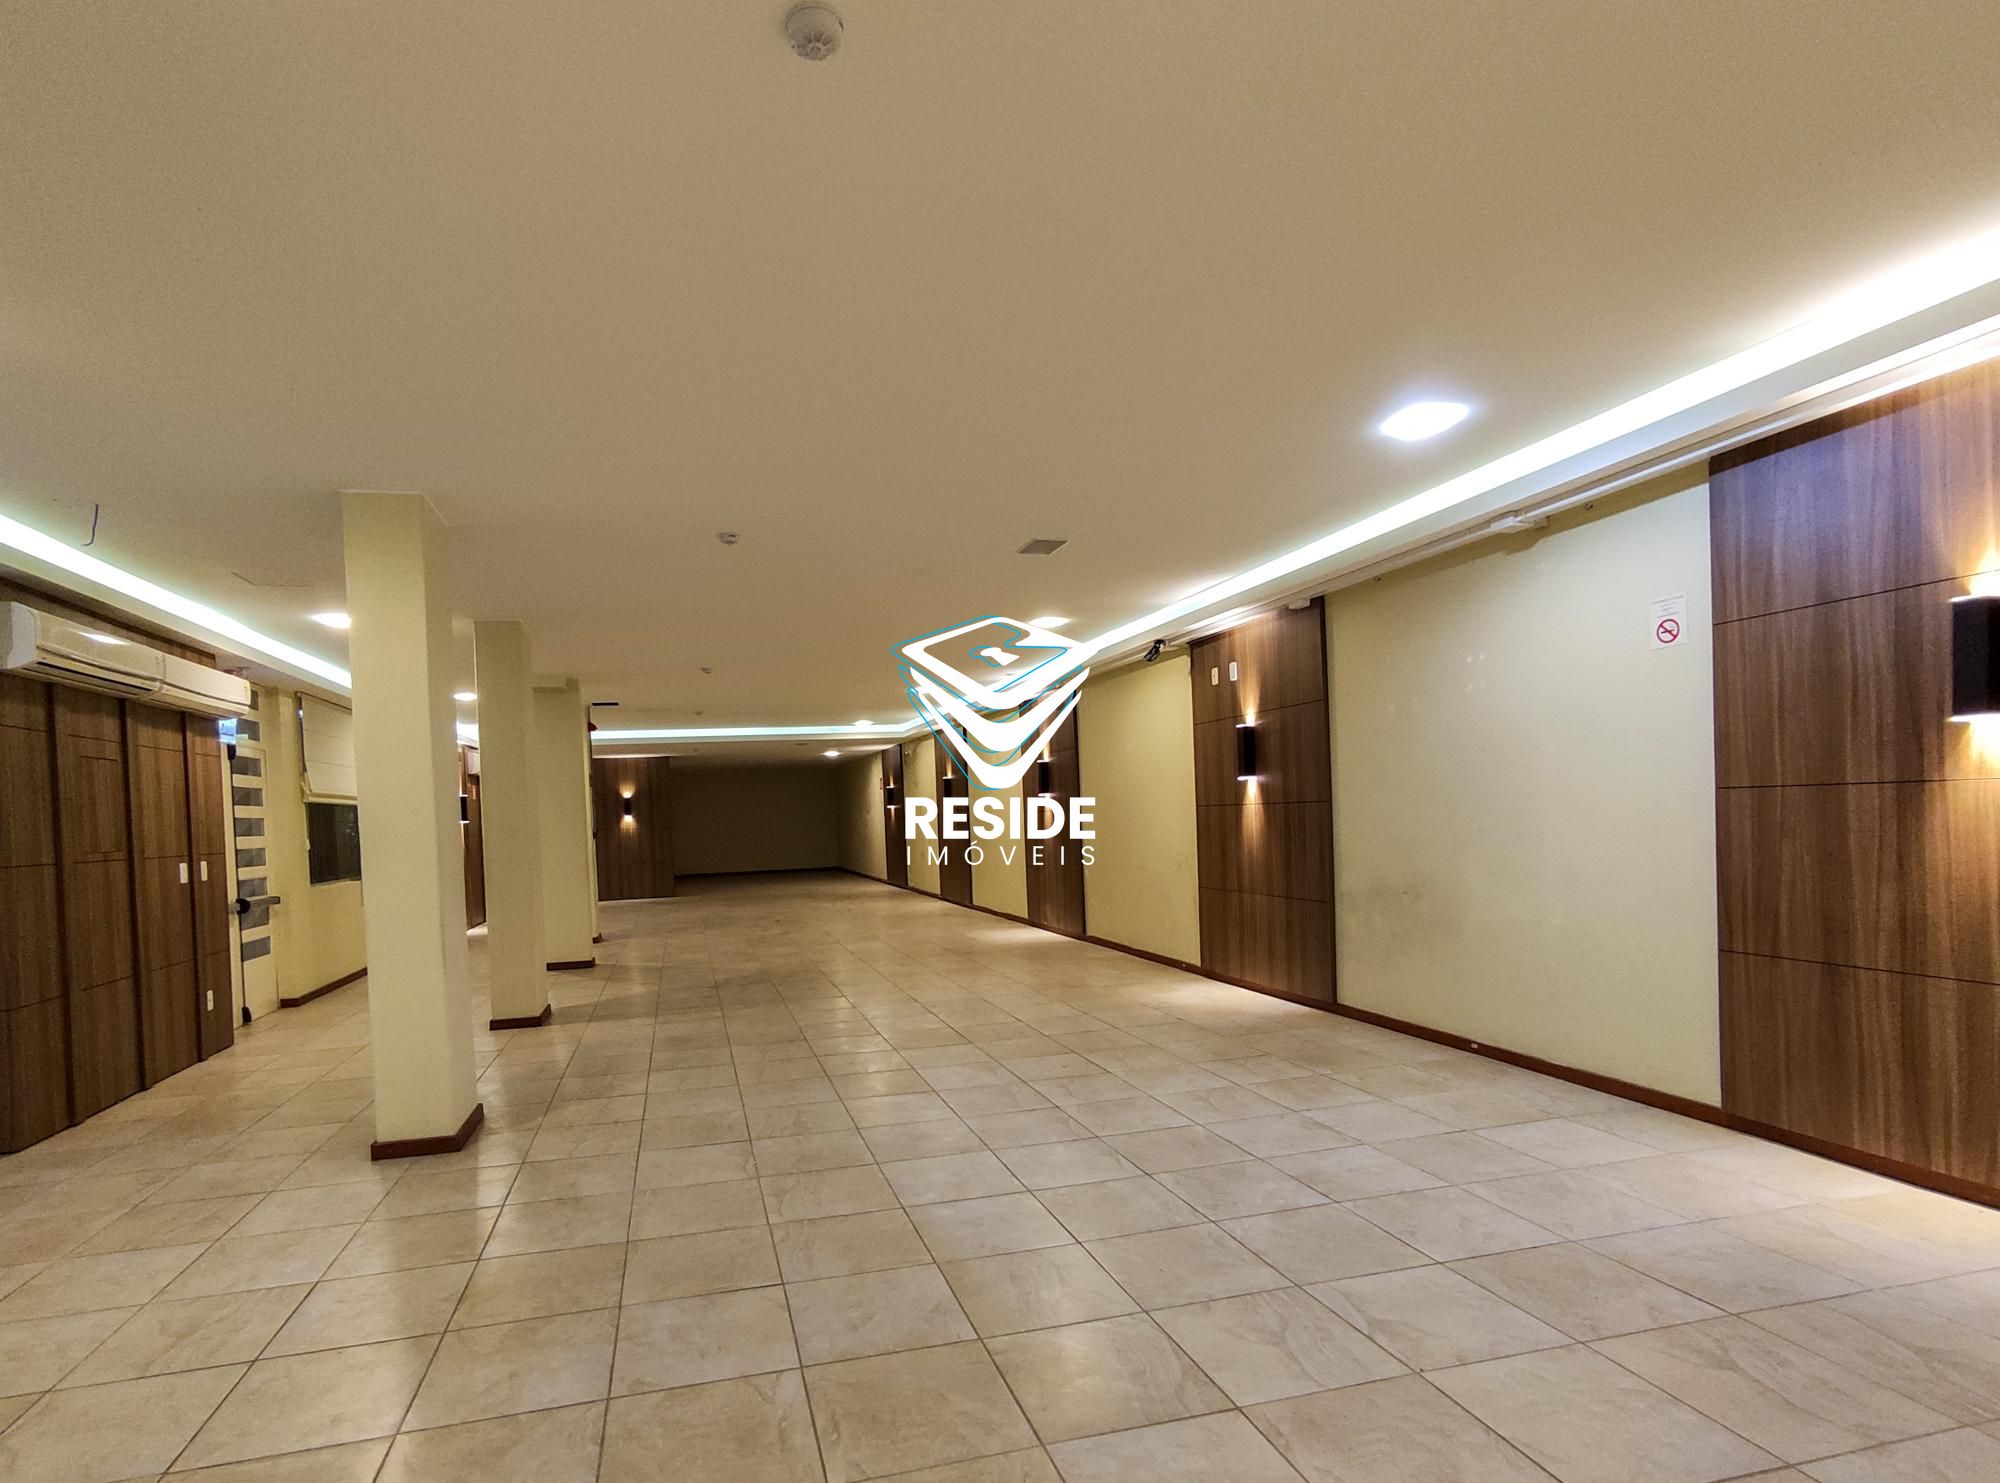 Prdio comercial/residencial para alugar  no Centro - Santa Maria, RS. Imveis